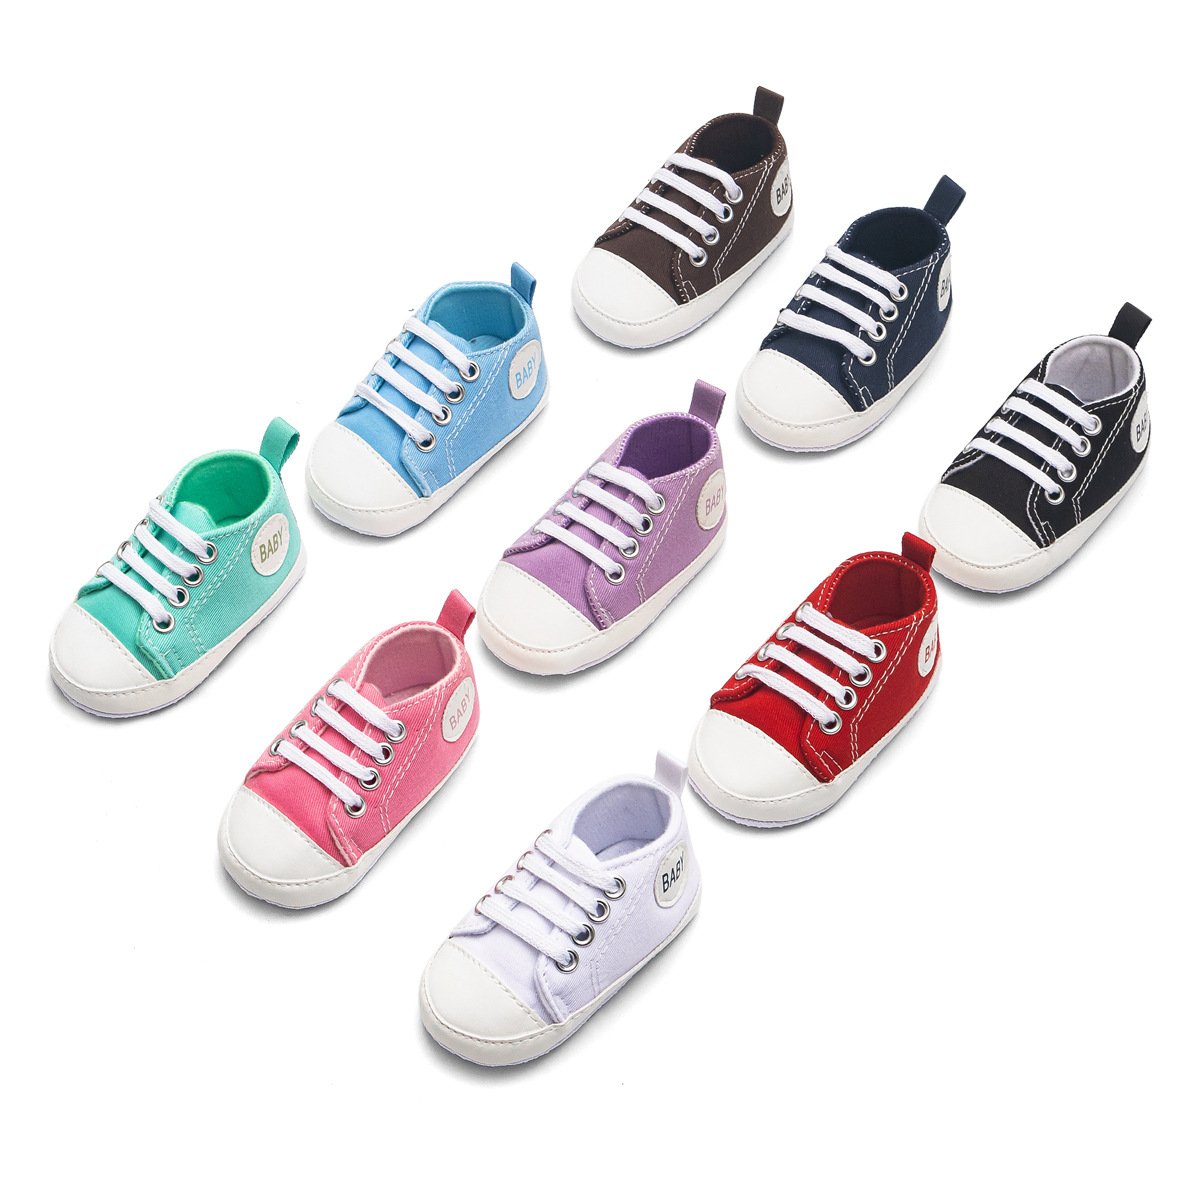 Zapatos de lona antideslizantes con estampado de letras “Baby” para bebé niño niña